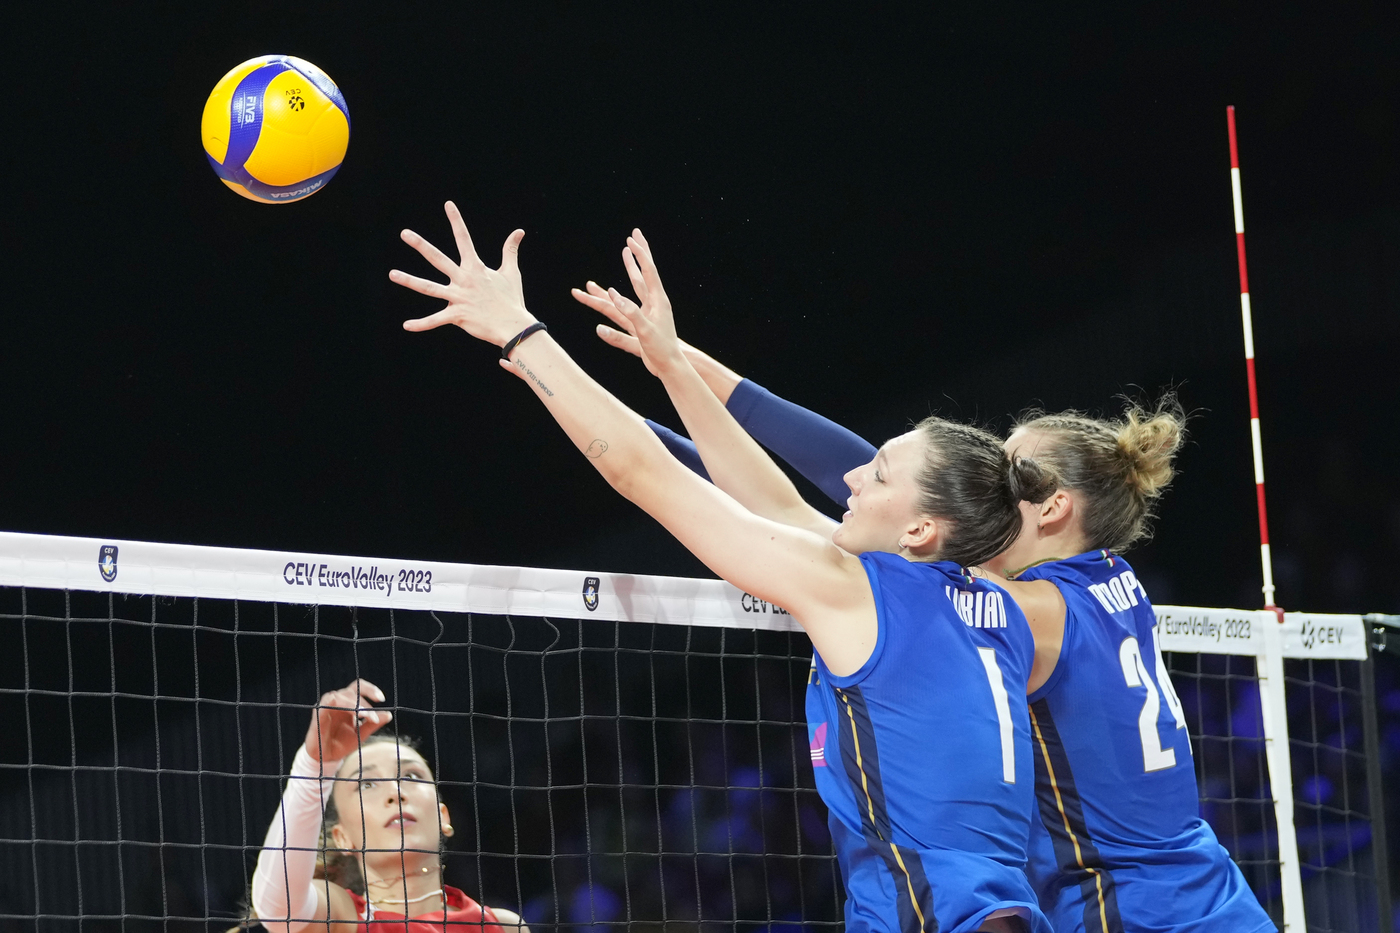 Volley femminile, quando gioca l’Italia in Nations League: orari, tv, calendario partite con Polonia, Germania, Bulgaria e Turchia